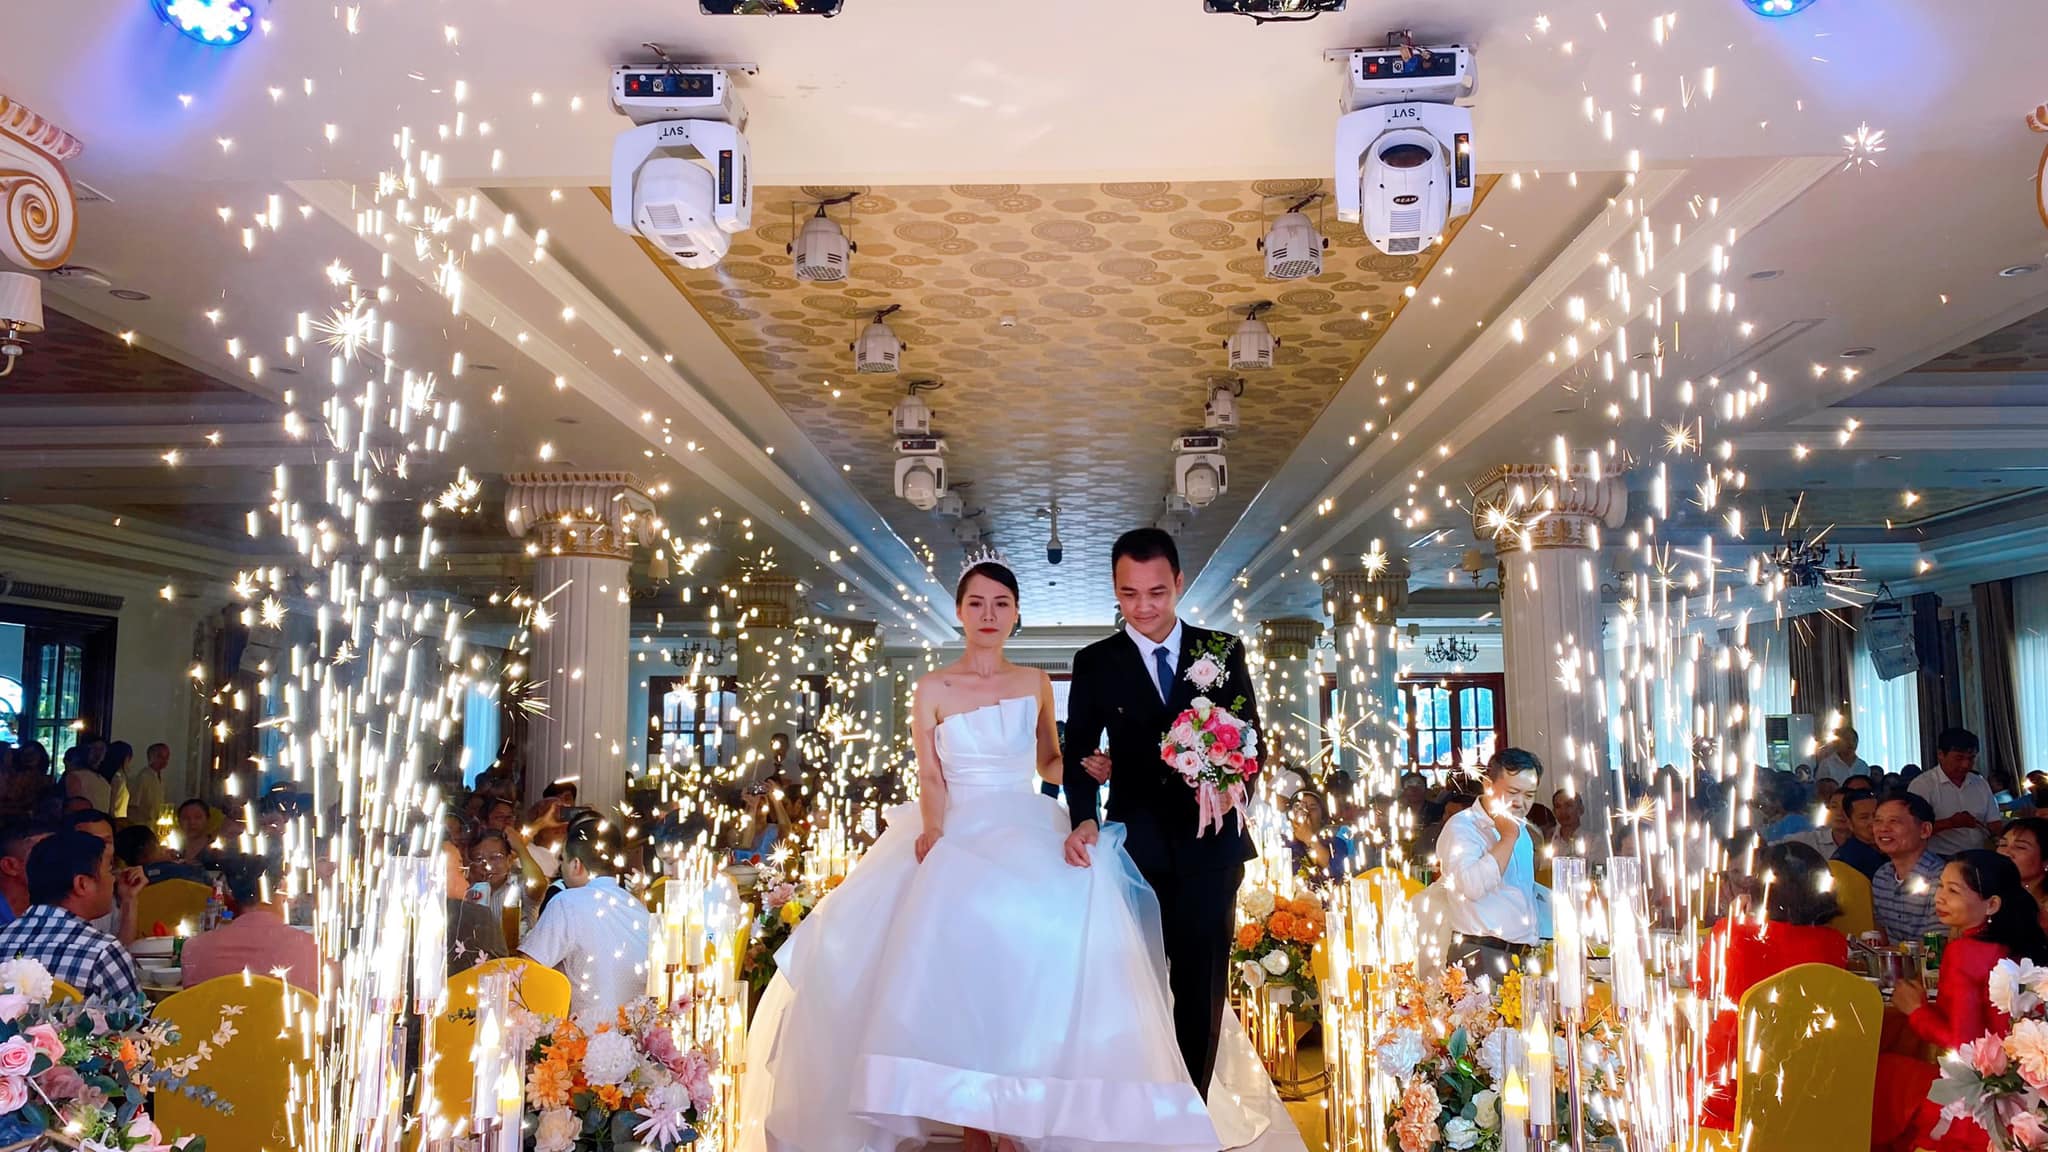 The Wedding of Mạnh Chiến & Thảo Nguyên 